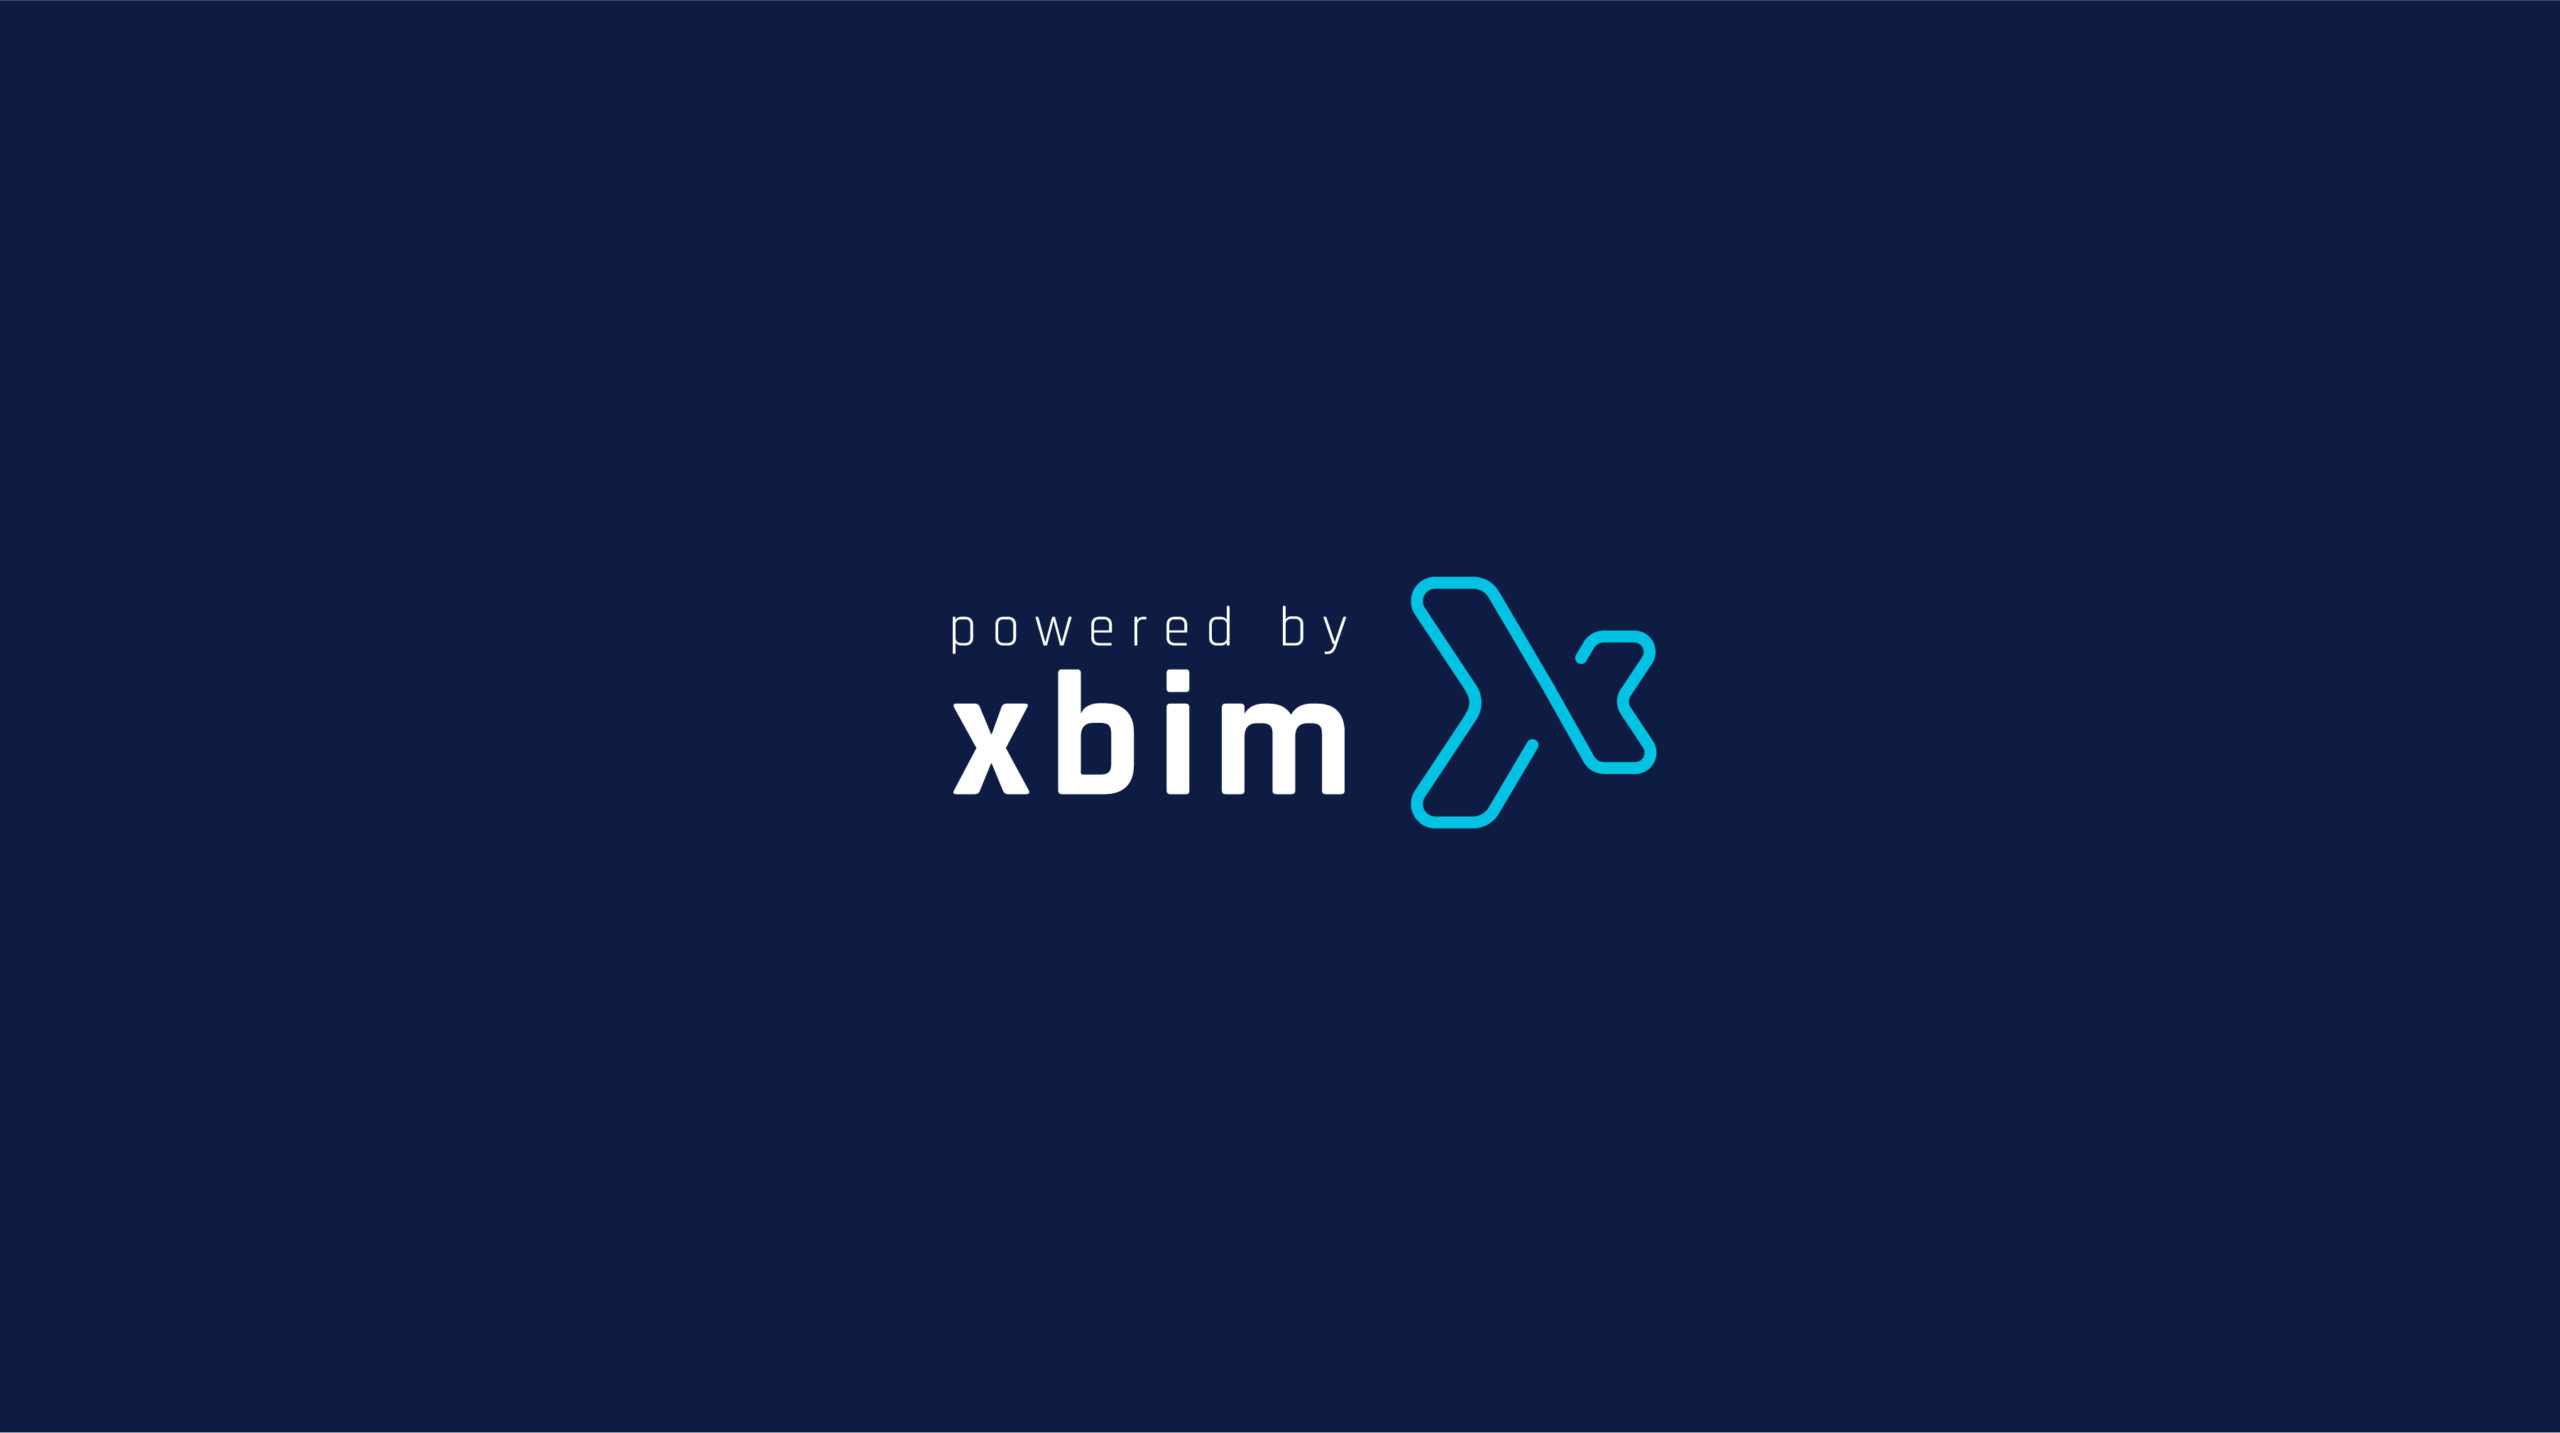 xbim brand identity